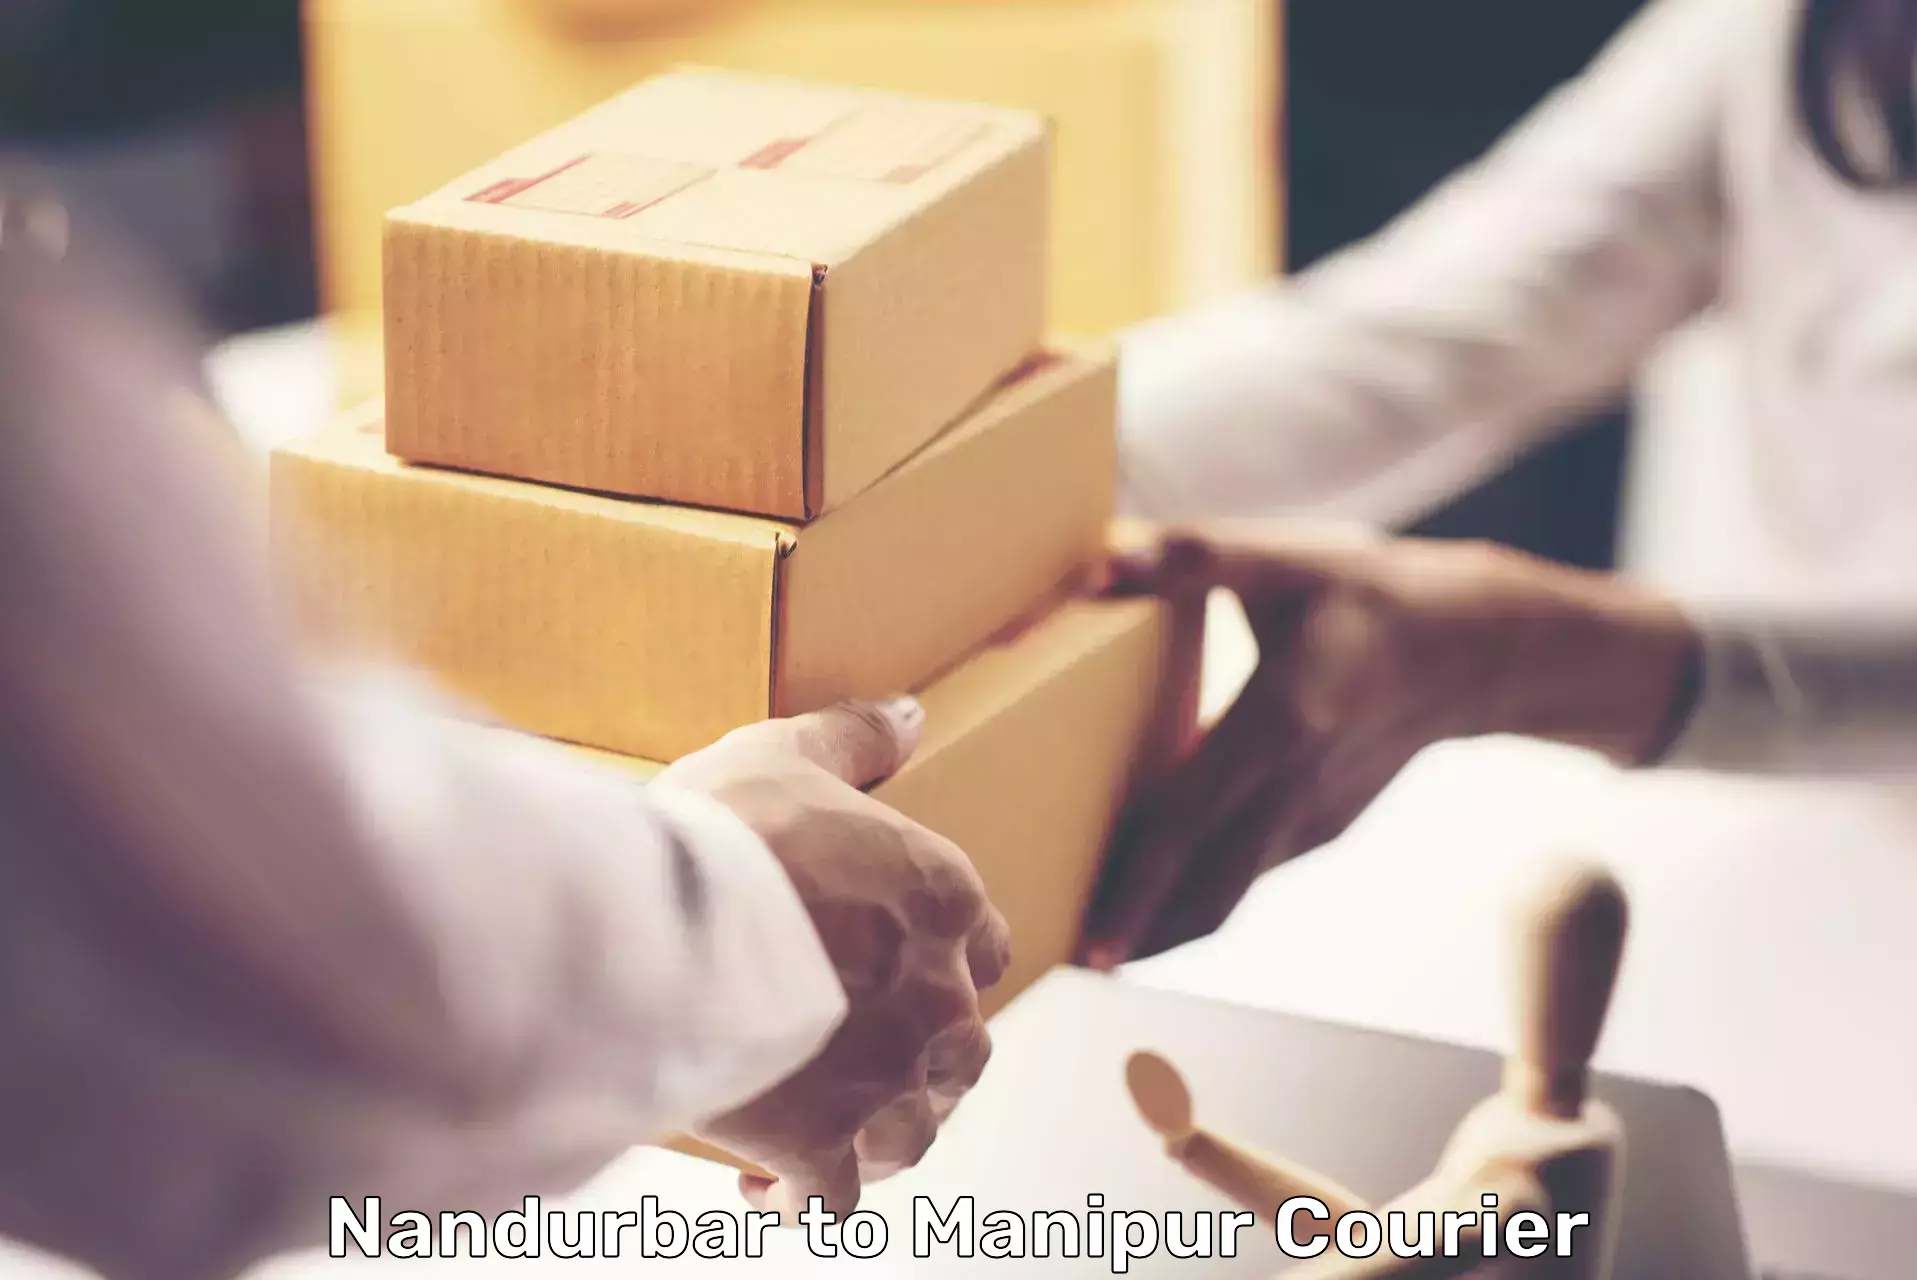 Custom courier packaging Nandurbar to Churachandpur